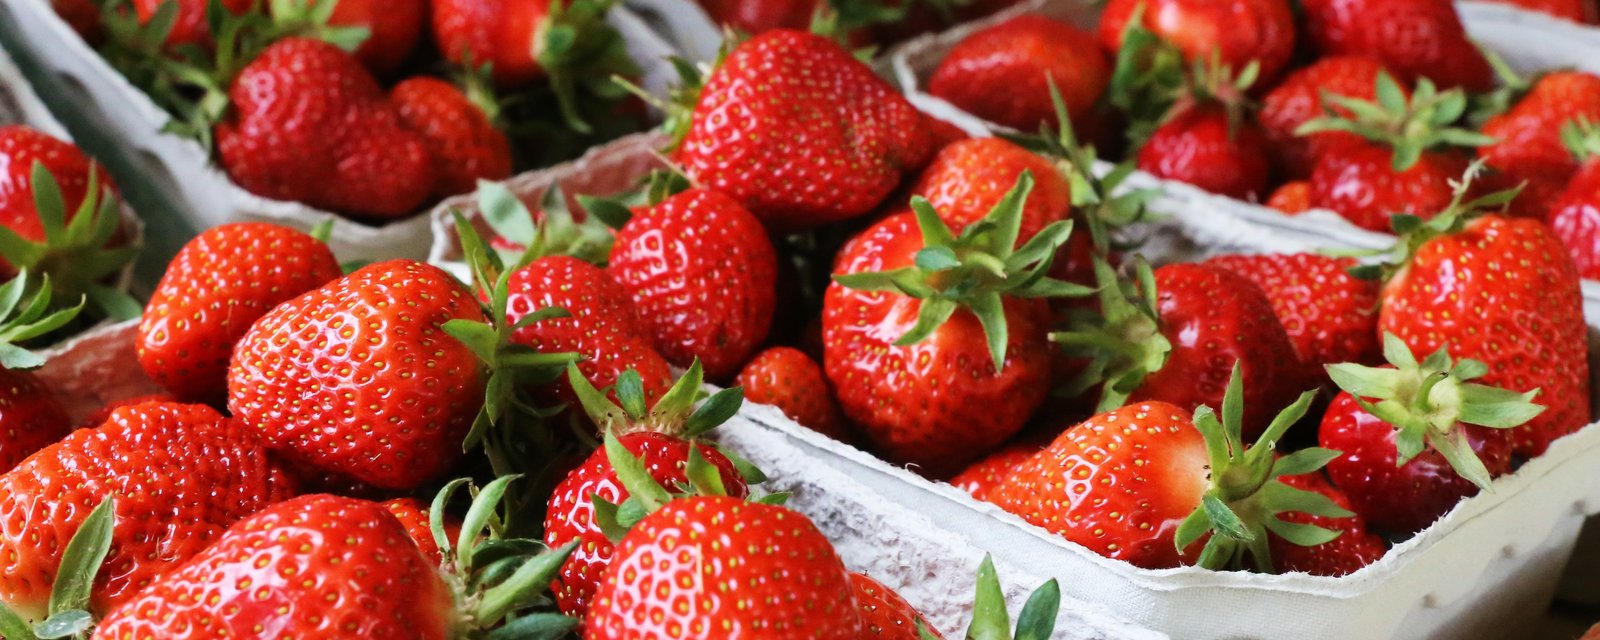 Les fraises du Québec ne sont pas vendues assez cher, selon les producteurs